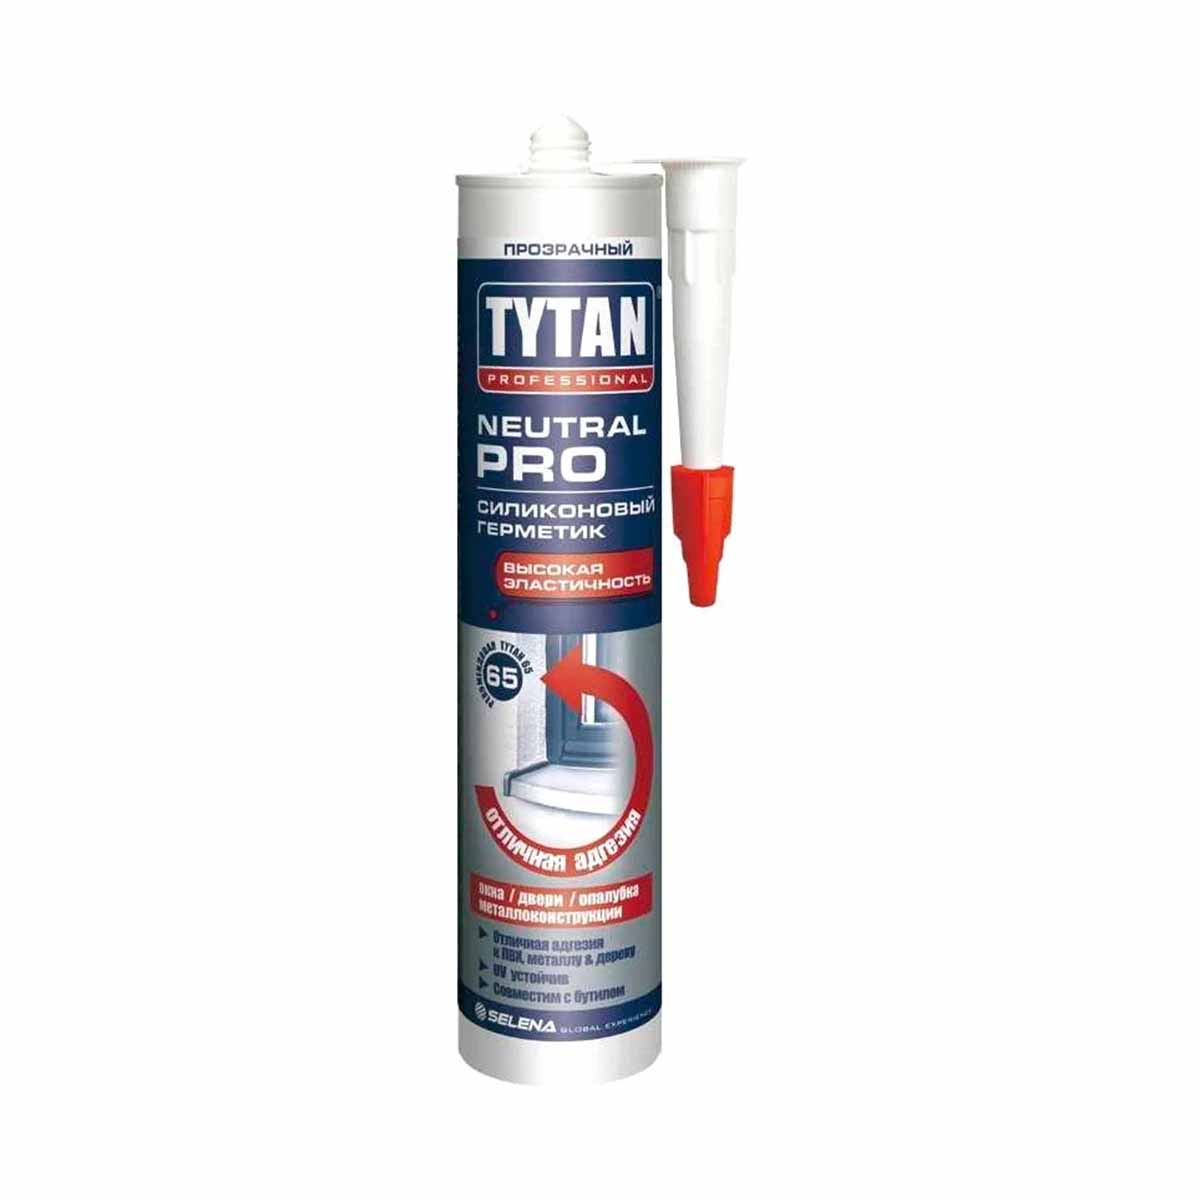 Нейтральный силиконовый герметик Tytan Professional Neutral PRO 17957, 280 мл, прозрачный герметик нейтральный силиконовый kraftool